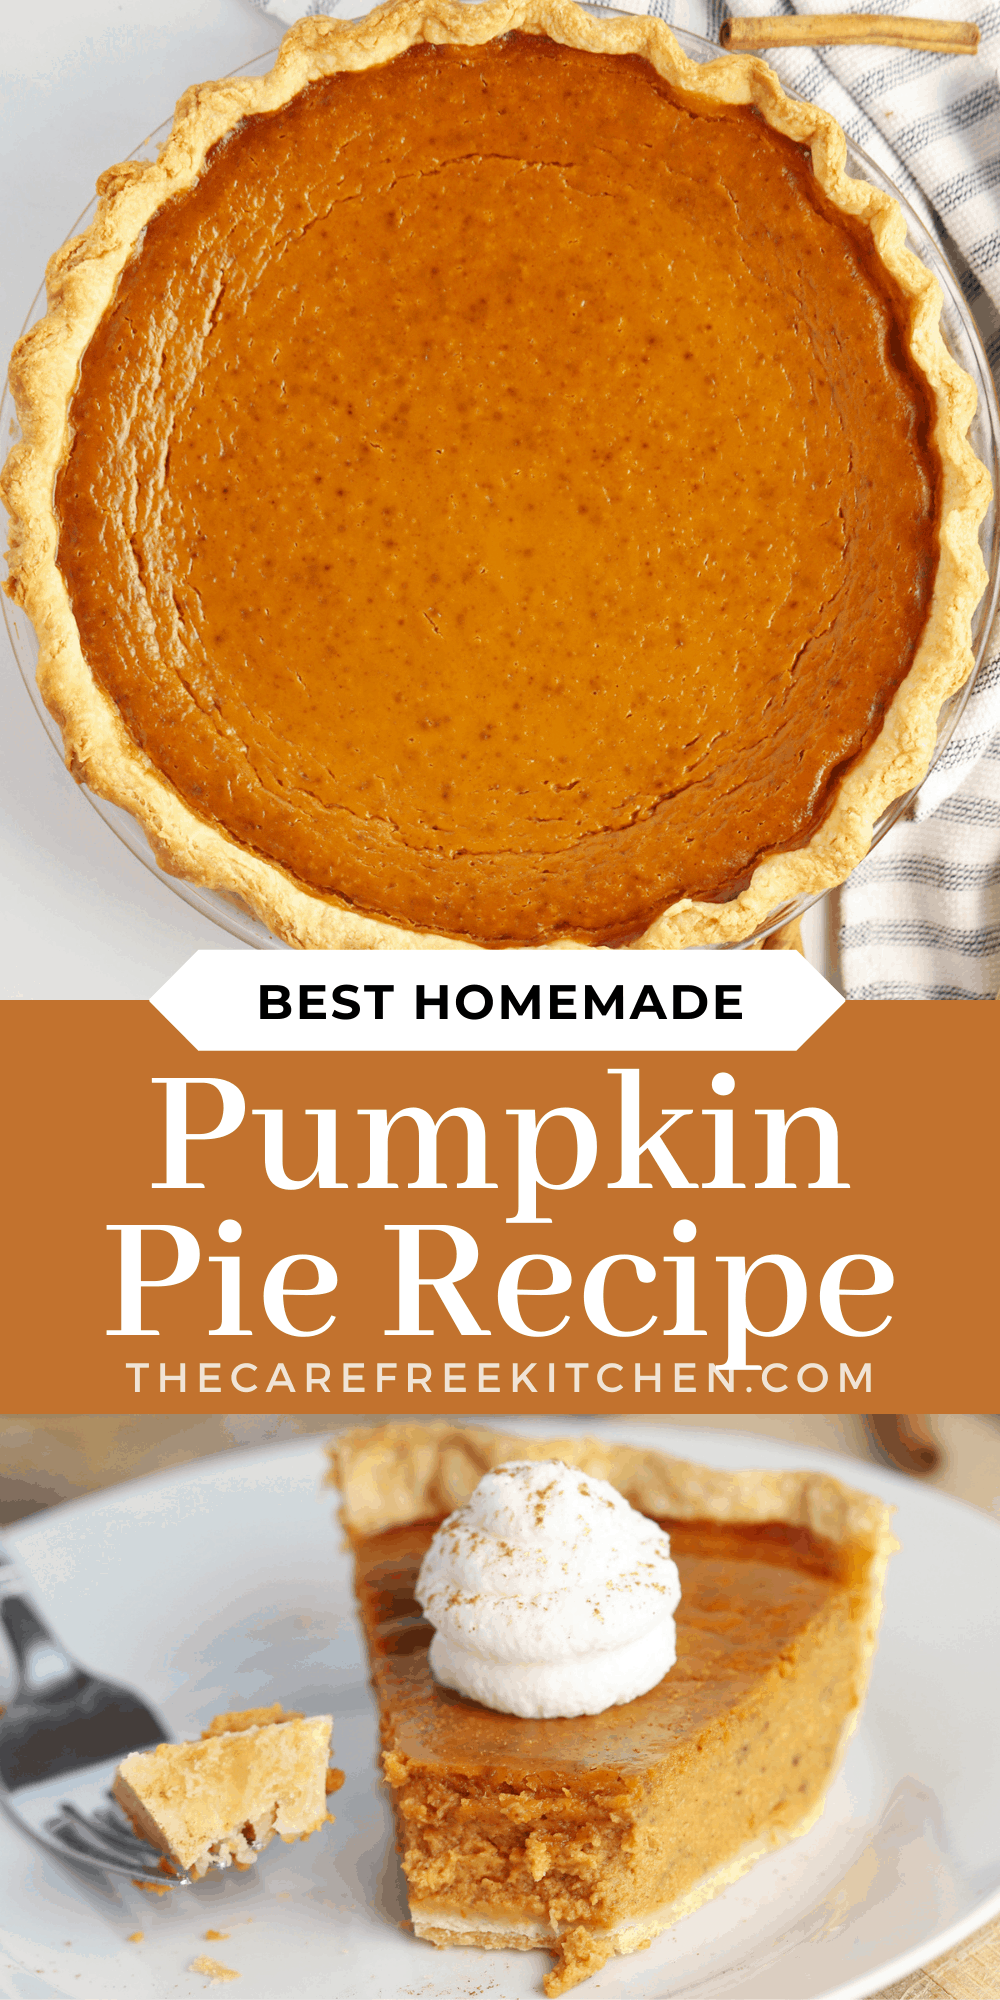 Best Pumpkin Pie Recipe From Scratch - The Carefree Kitchen